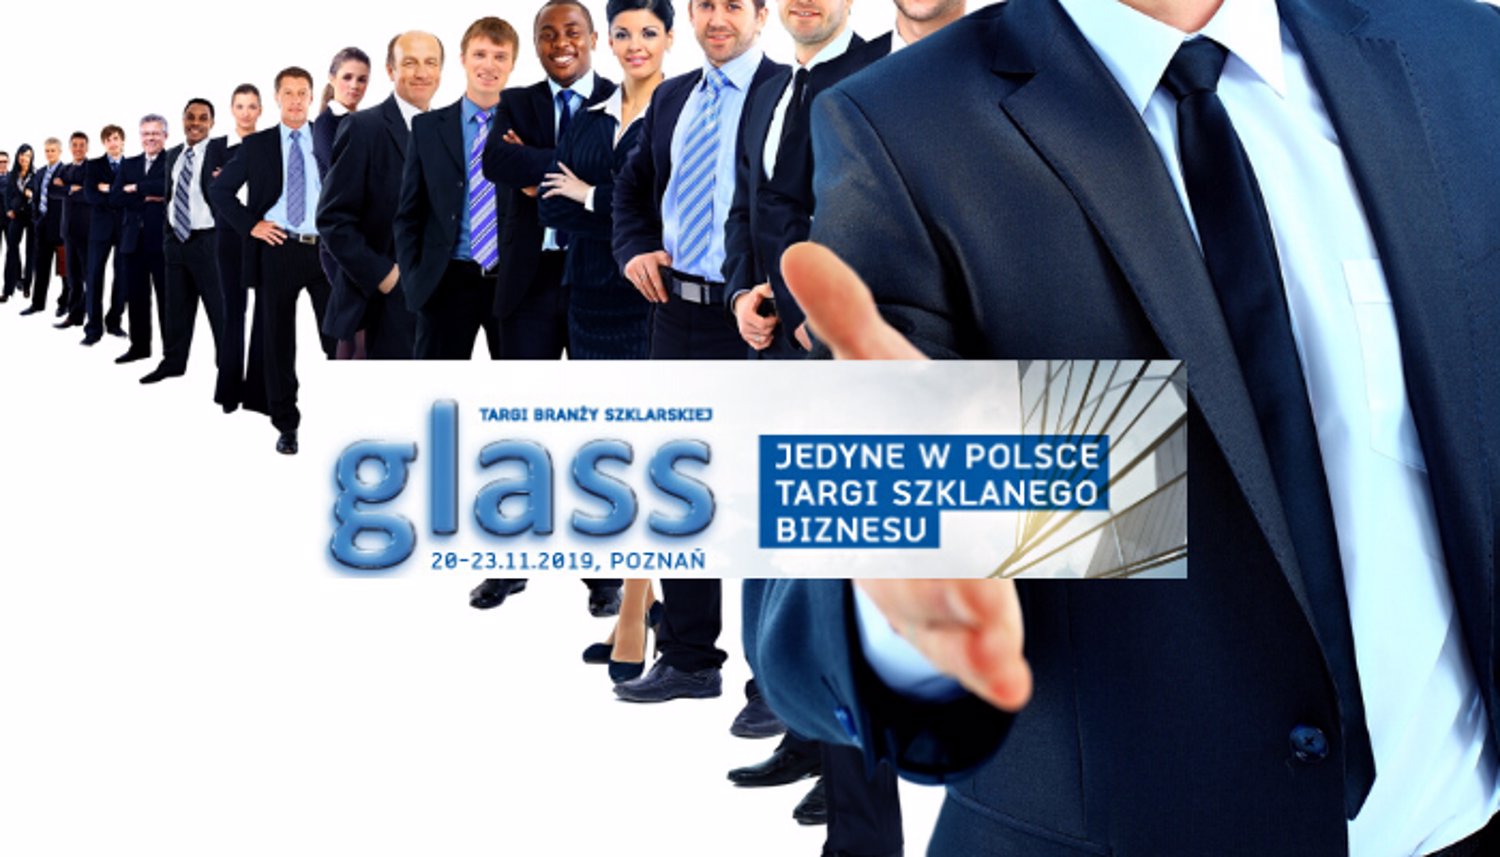 Kluczowe firmy branży szklarskiej na targach Glass